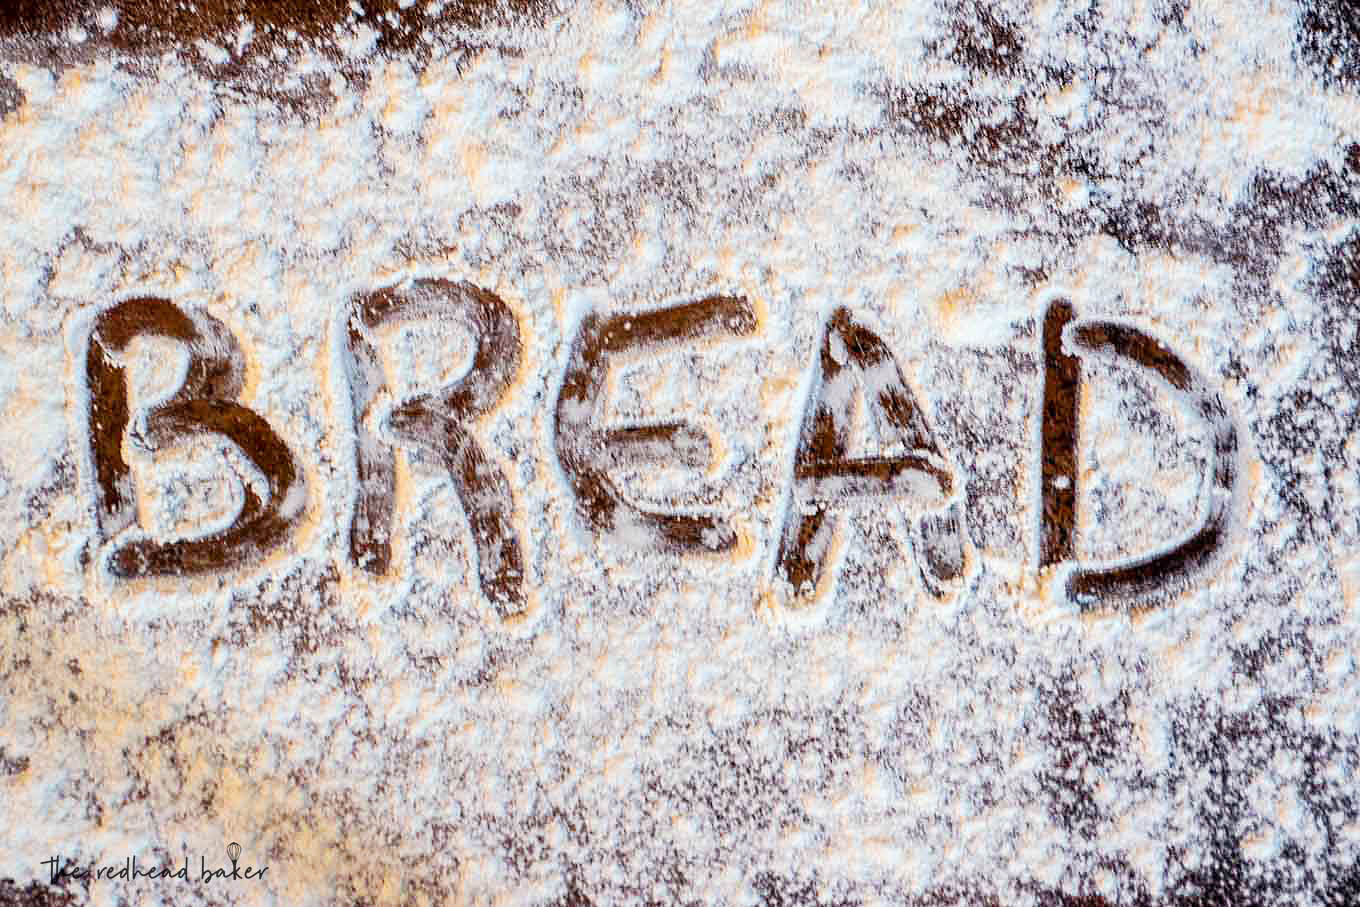 The word "bread" written in flour on a sheet pan.